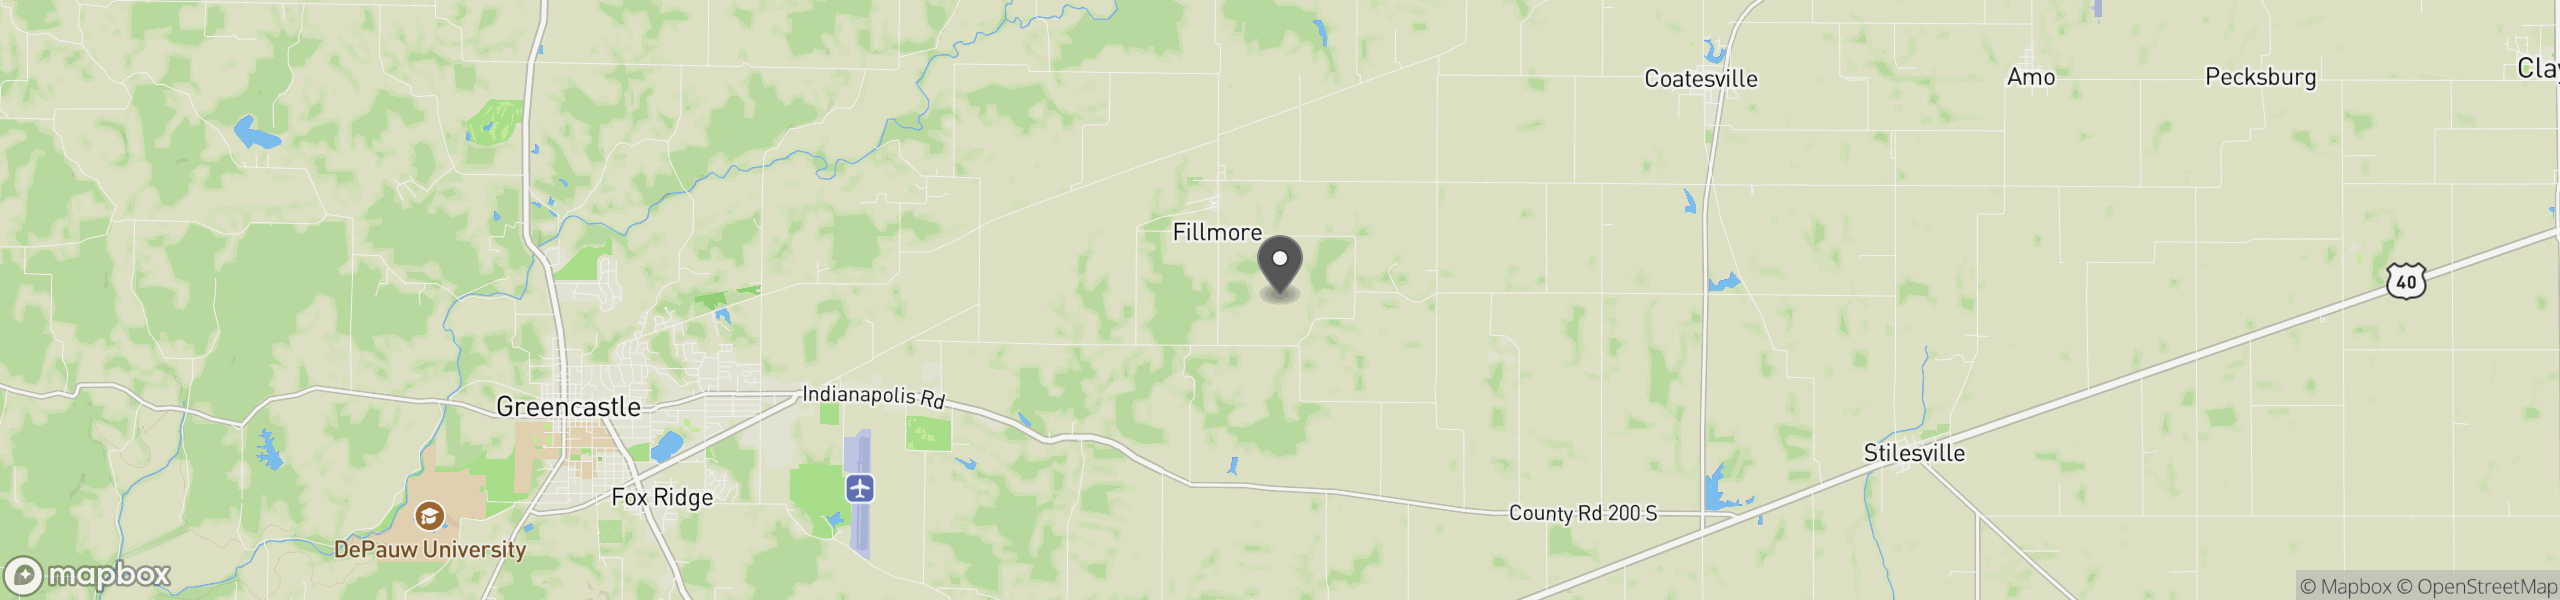 Fillmore, IN 46128